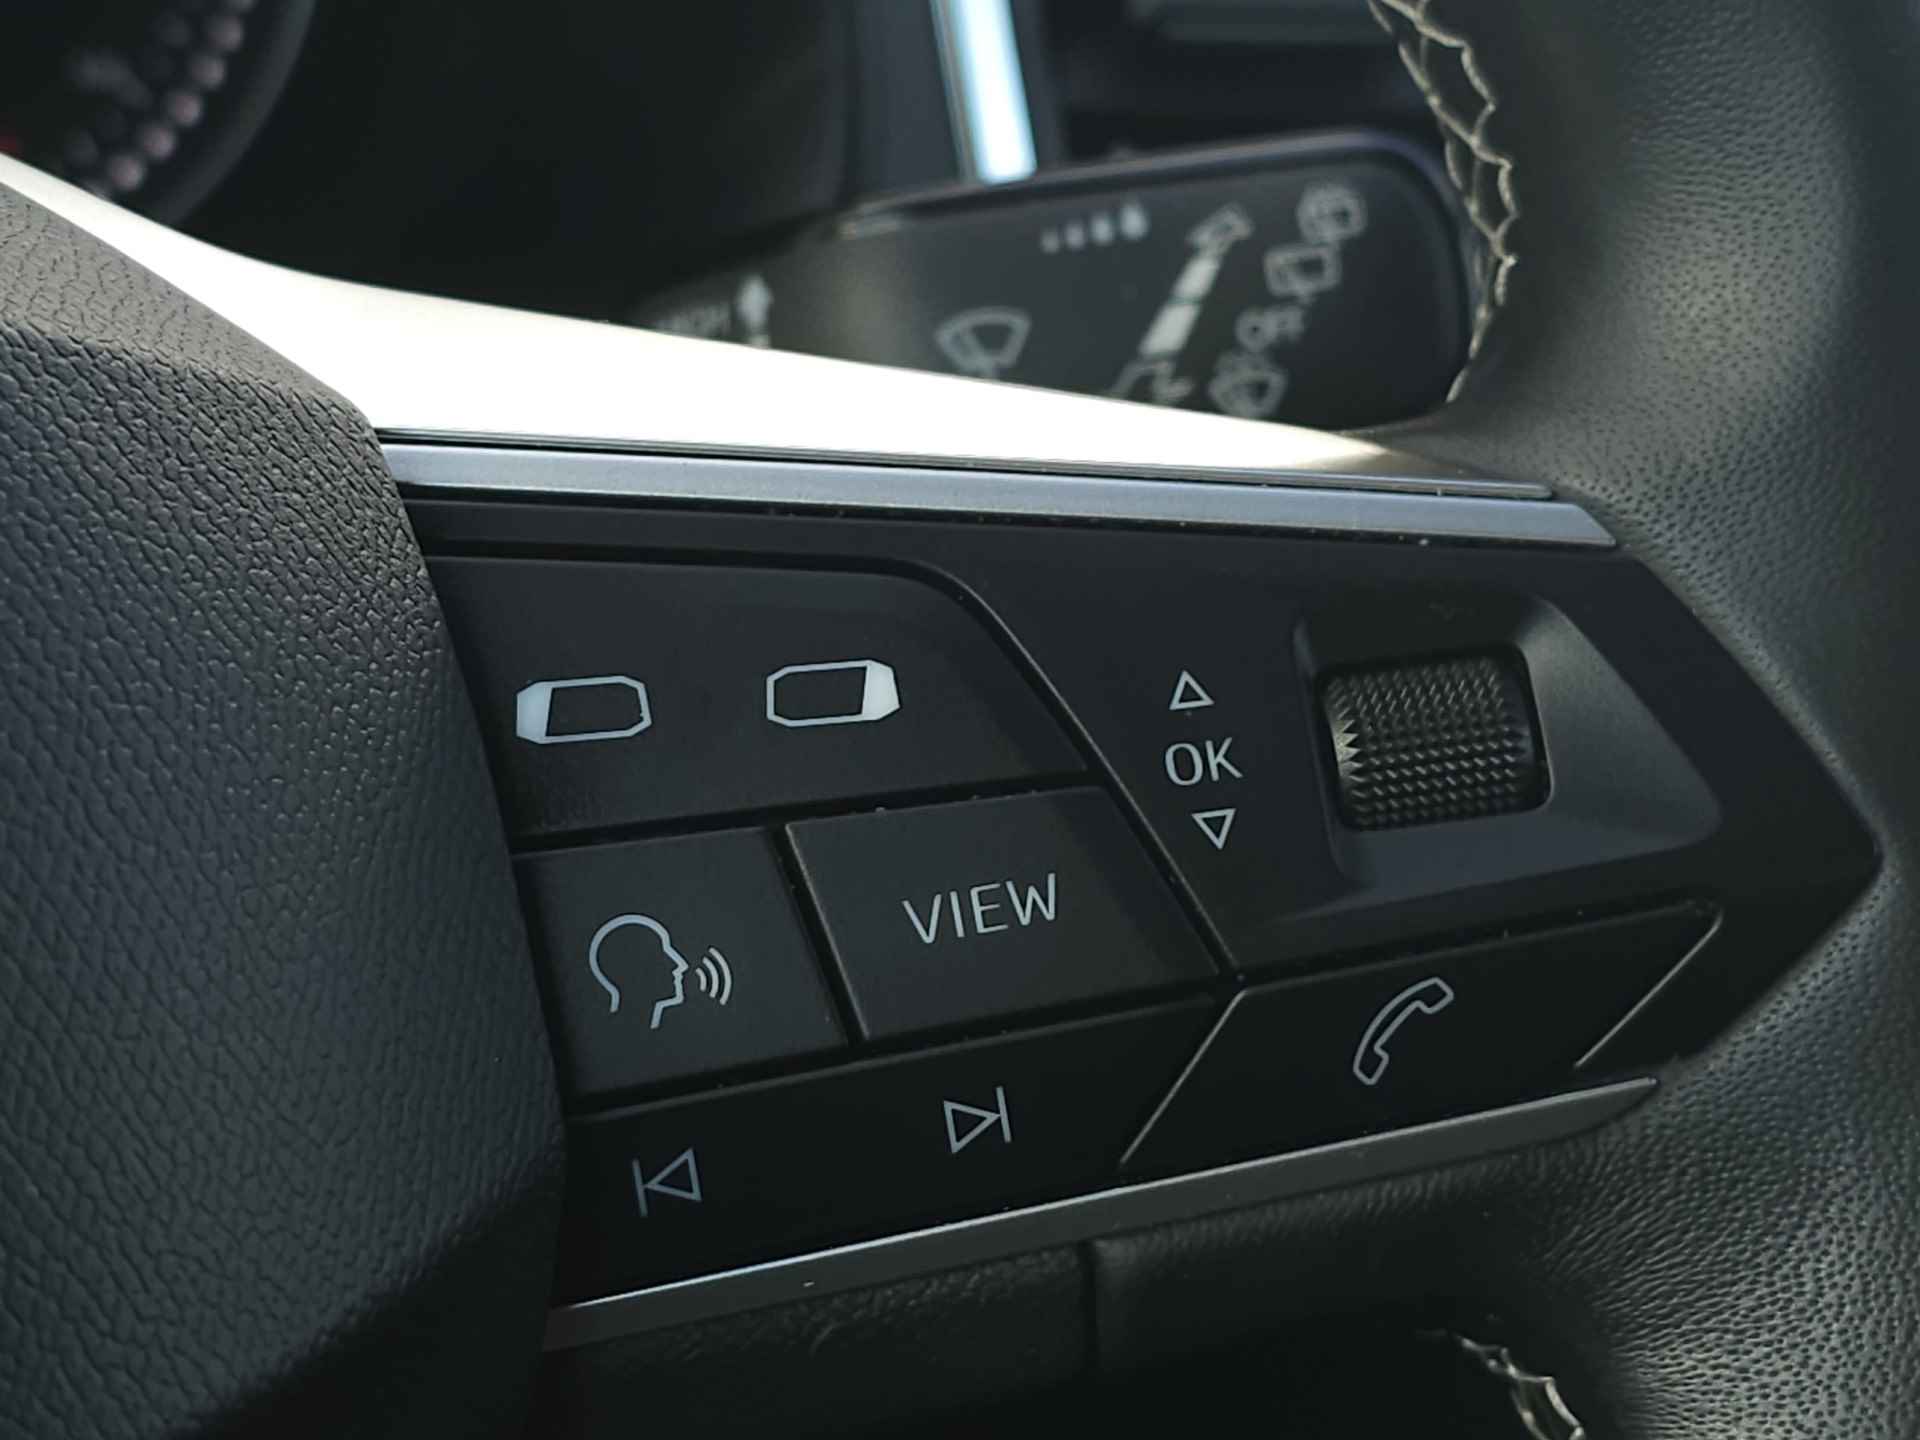 SEAT Ateca 1.0 TSI 110 pk Style Business Intense | Navigatie | LED | Lm velgen | Camera | Sensoren | All Season banden | incl. Bovag rijklaarpakket met 12 maanden garantie | - 23/35